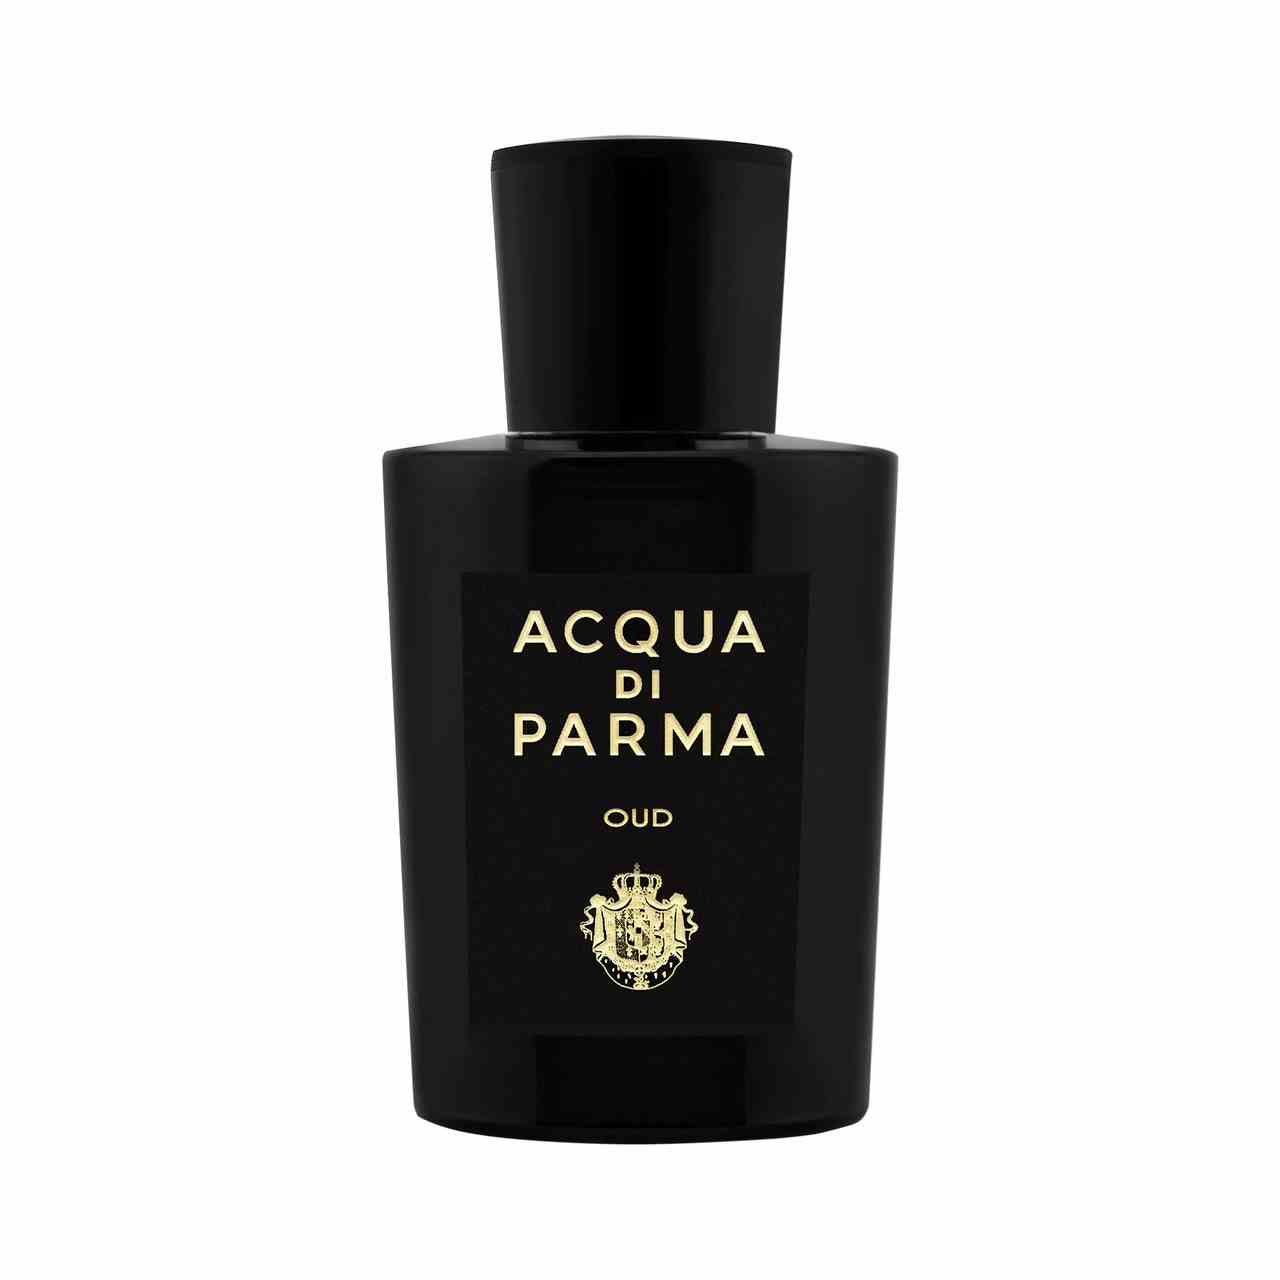 Acqua di Parma Oud Eau de Parfum schwarze Flasche Parfüm auf weißem Hintergrund